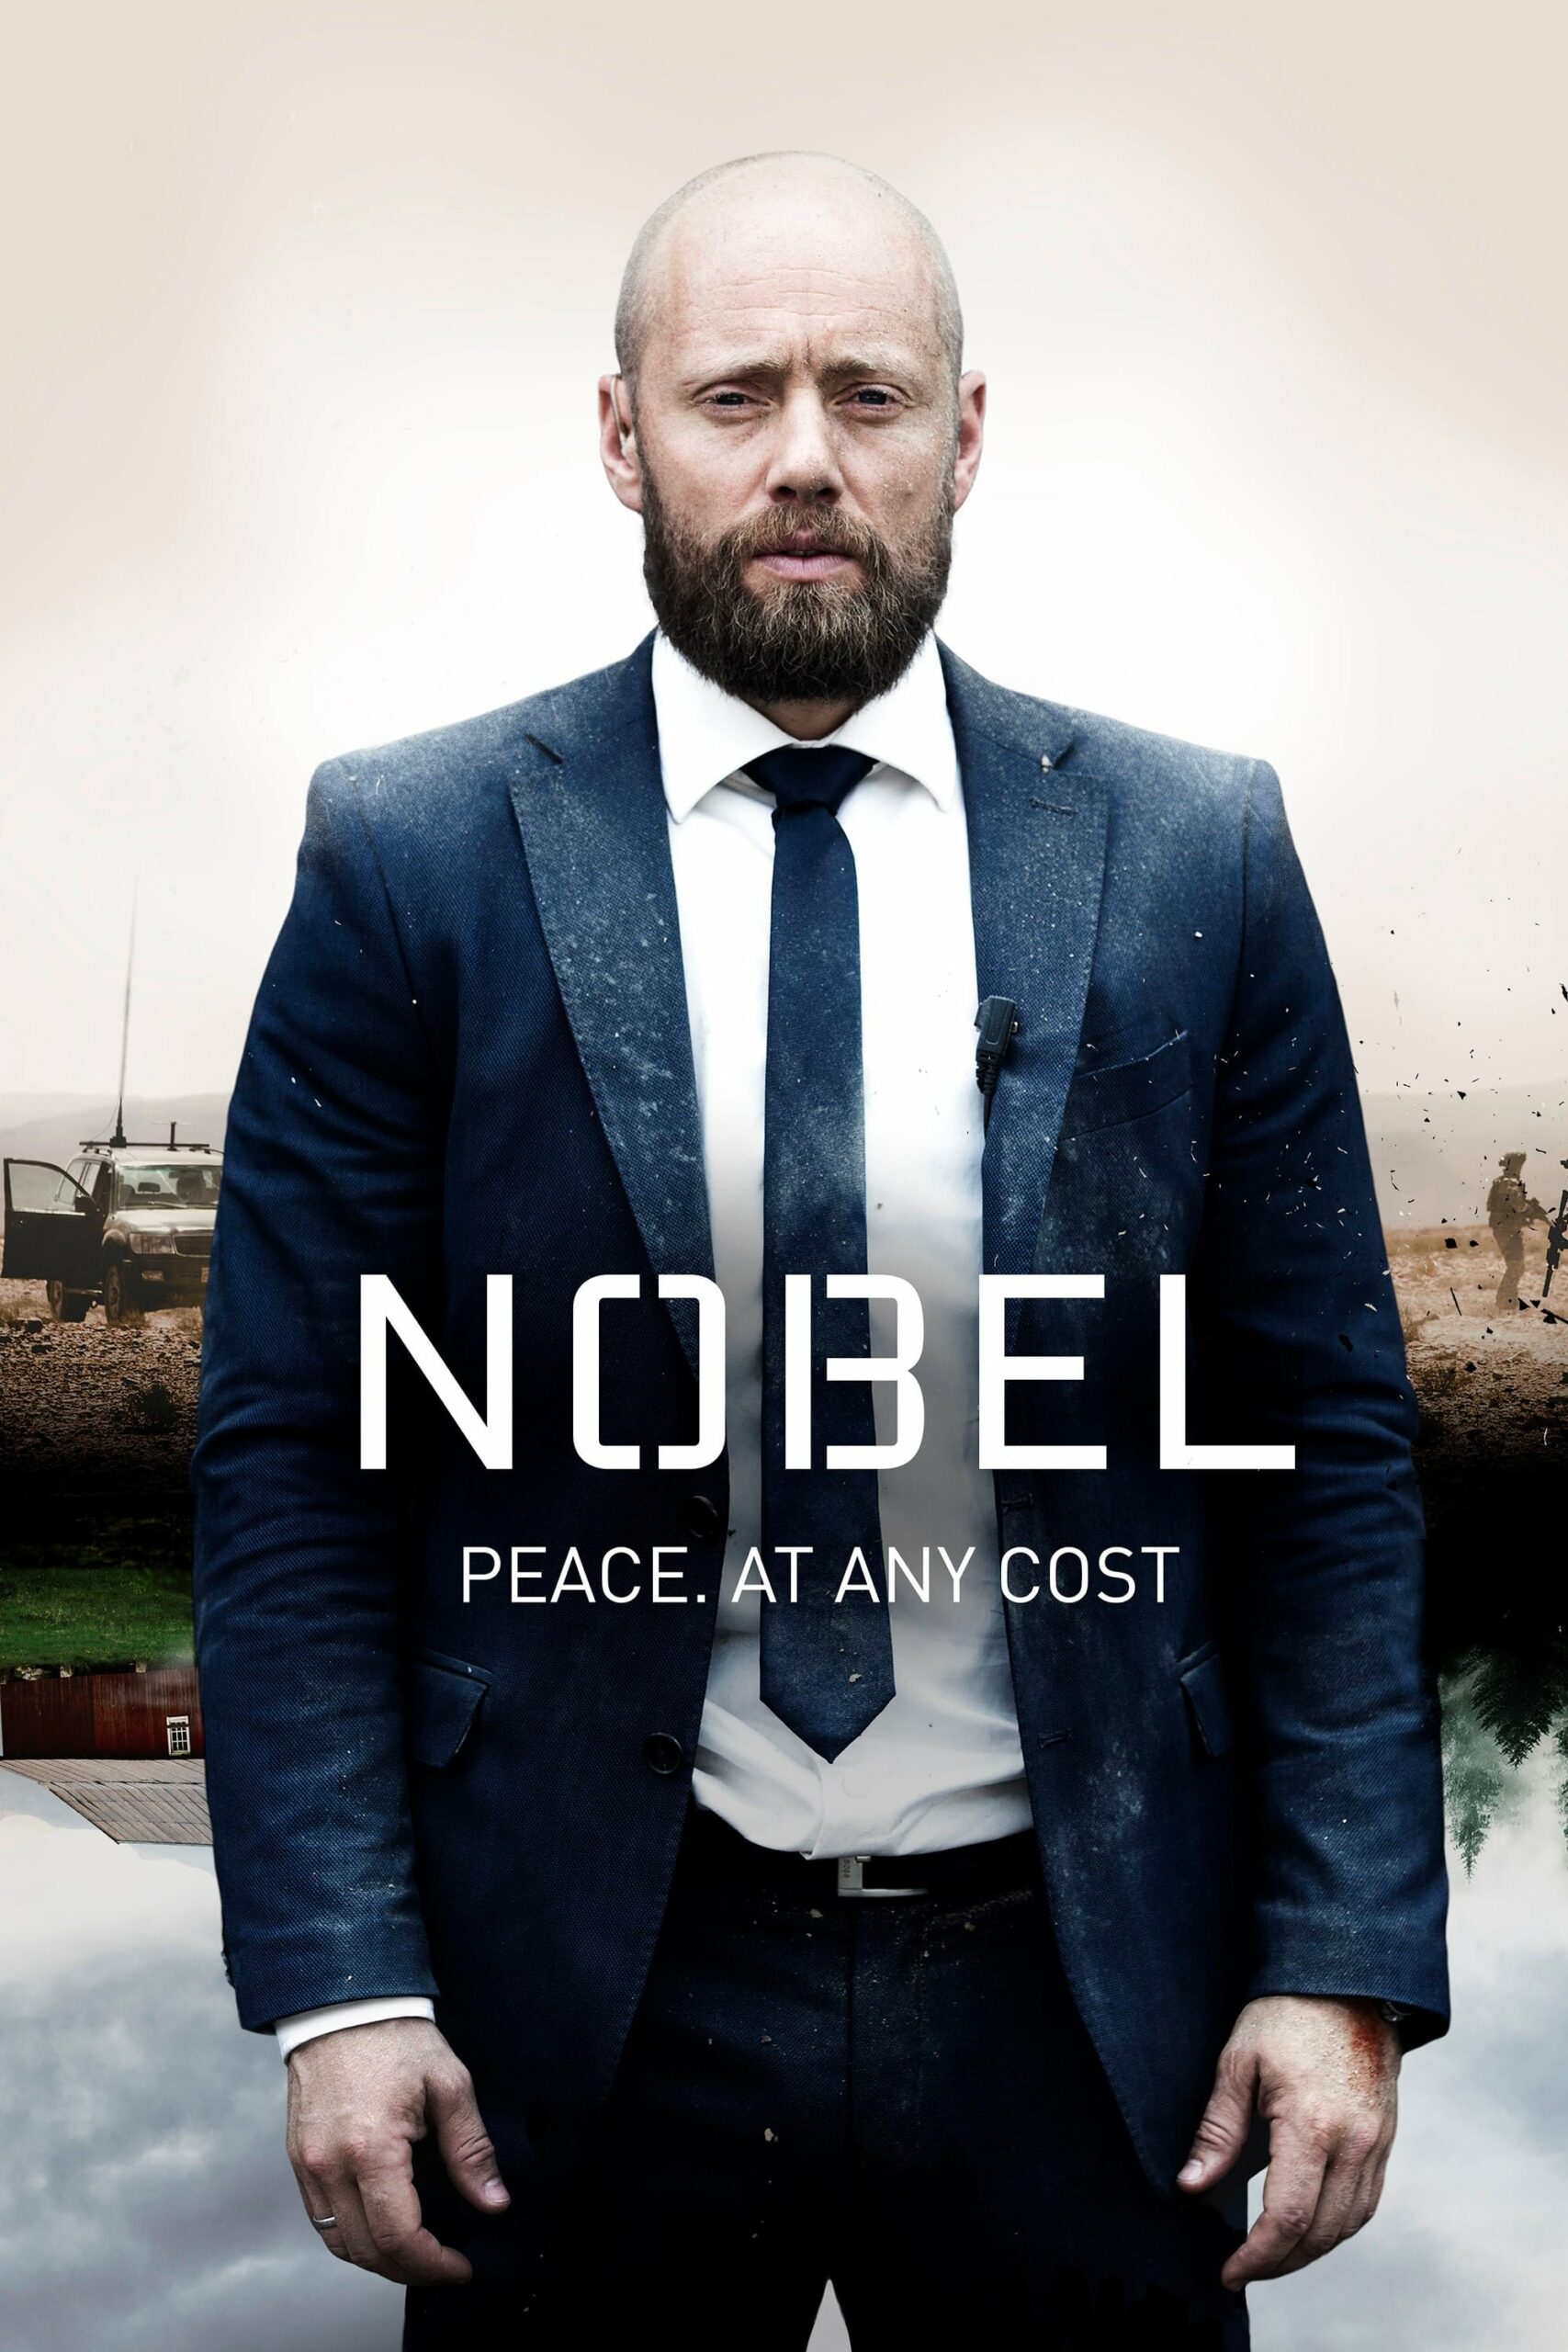 Plakát pro film “Nobel”